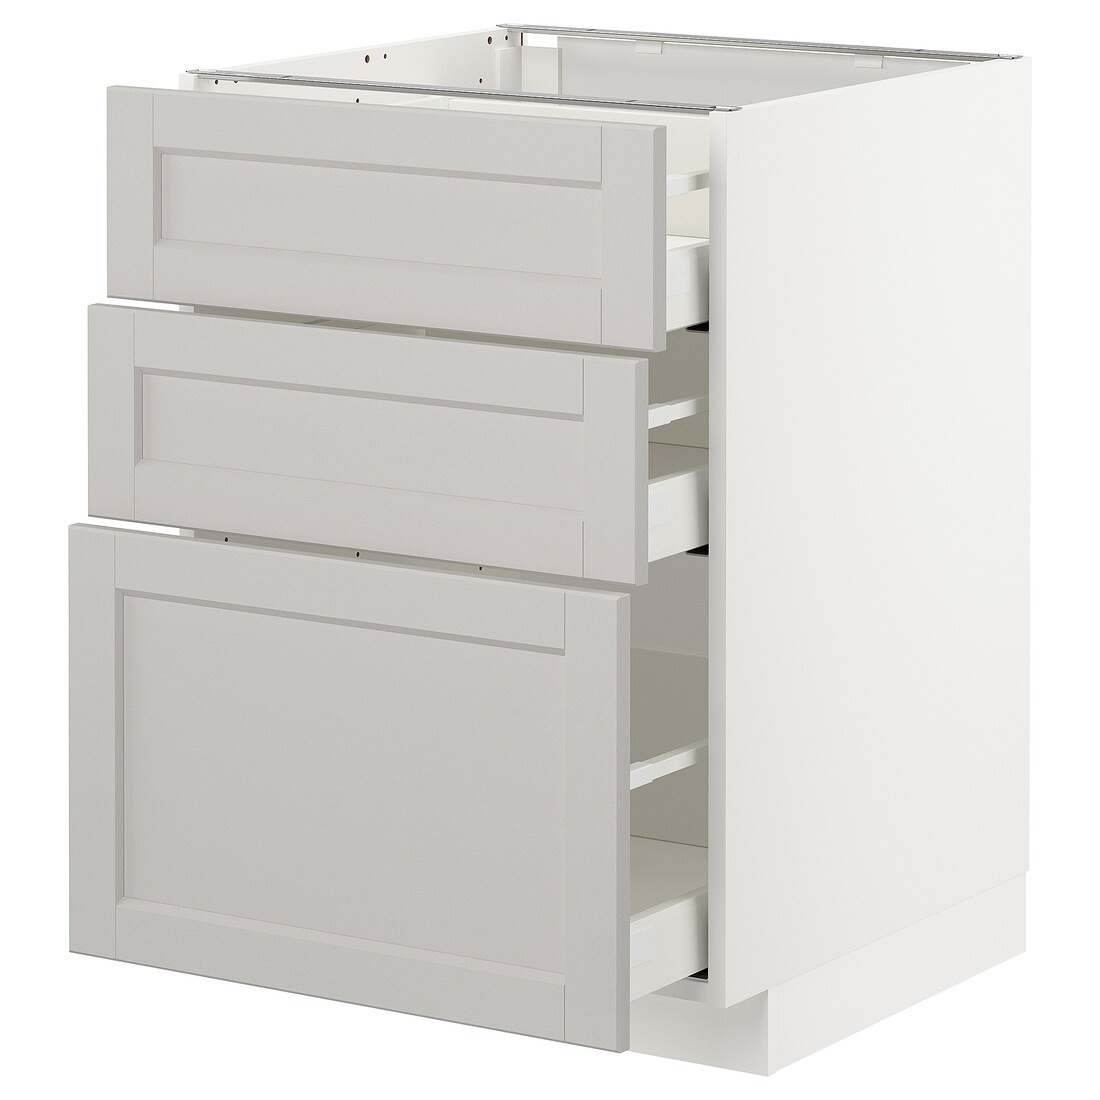 IKEA METOD МЕТОД / MAXIMERA МАКСИМЕРА Напольный шкаф с 3 ящиками, белый / Lerhyttan светло-серый, 60x60 см 39274230 392.742.30